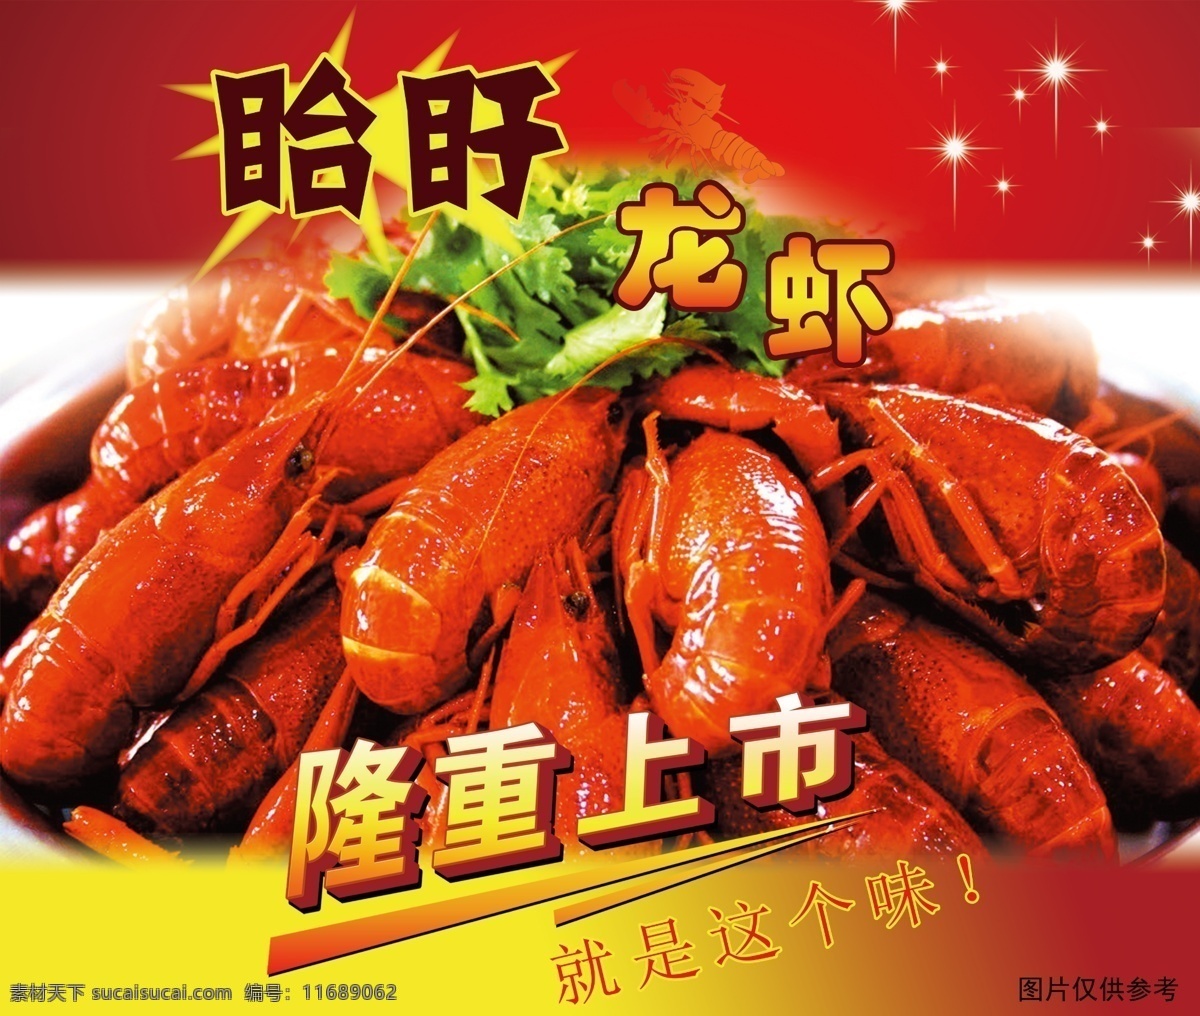 龙虾广告 龙虾 广告 隆重上市 新鲜 餐饮